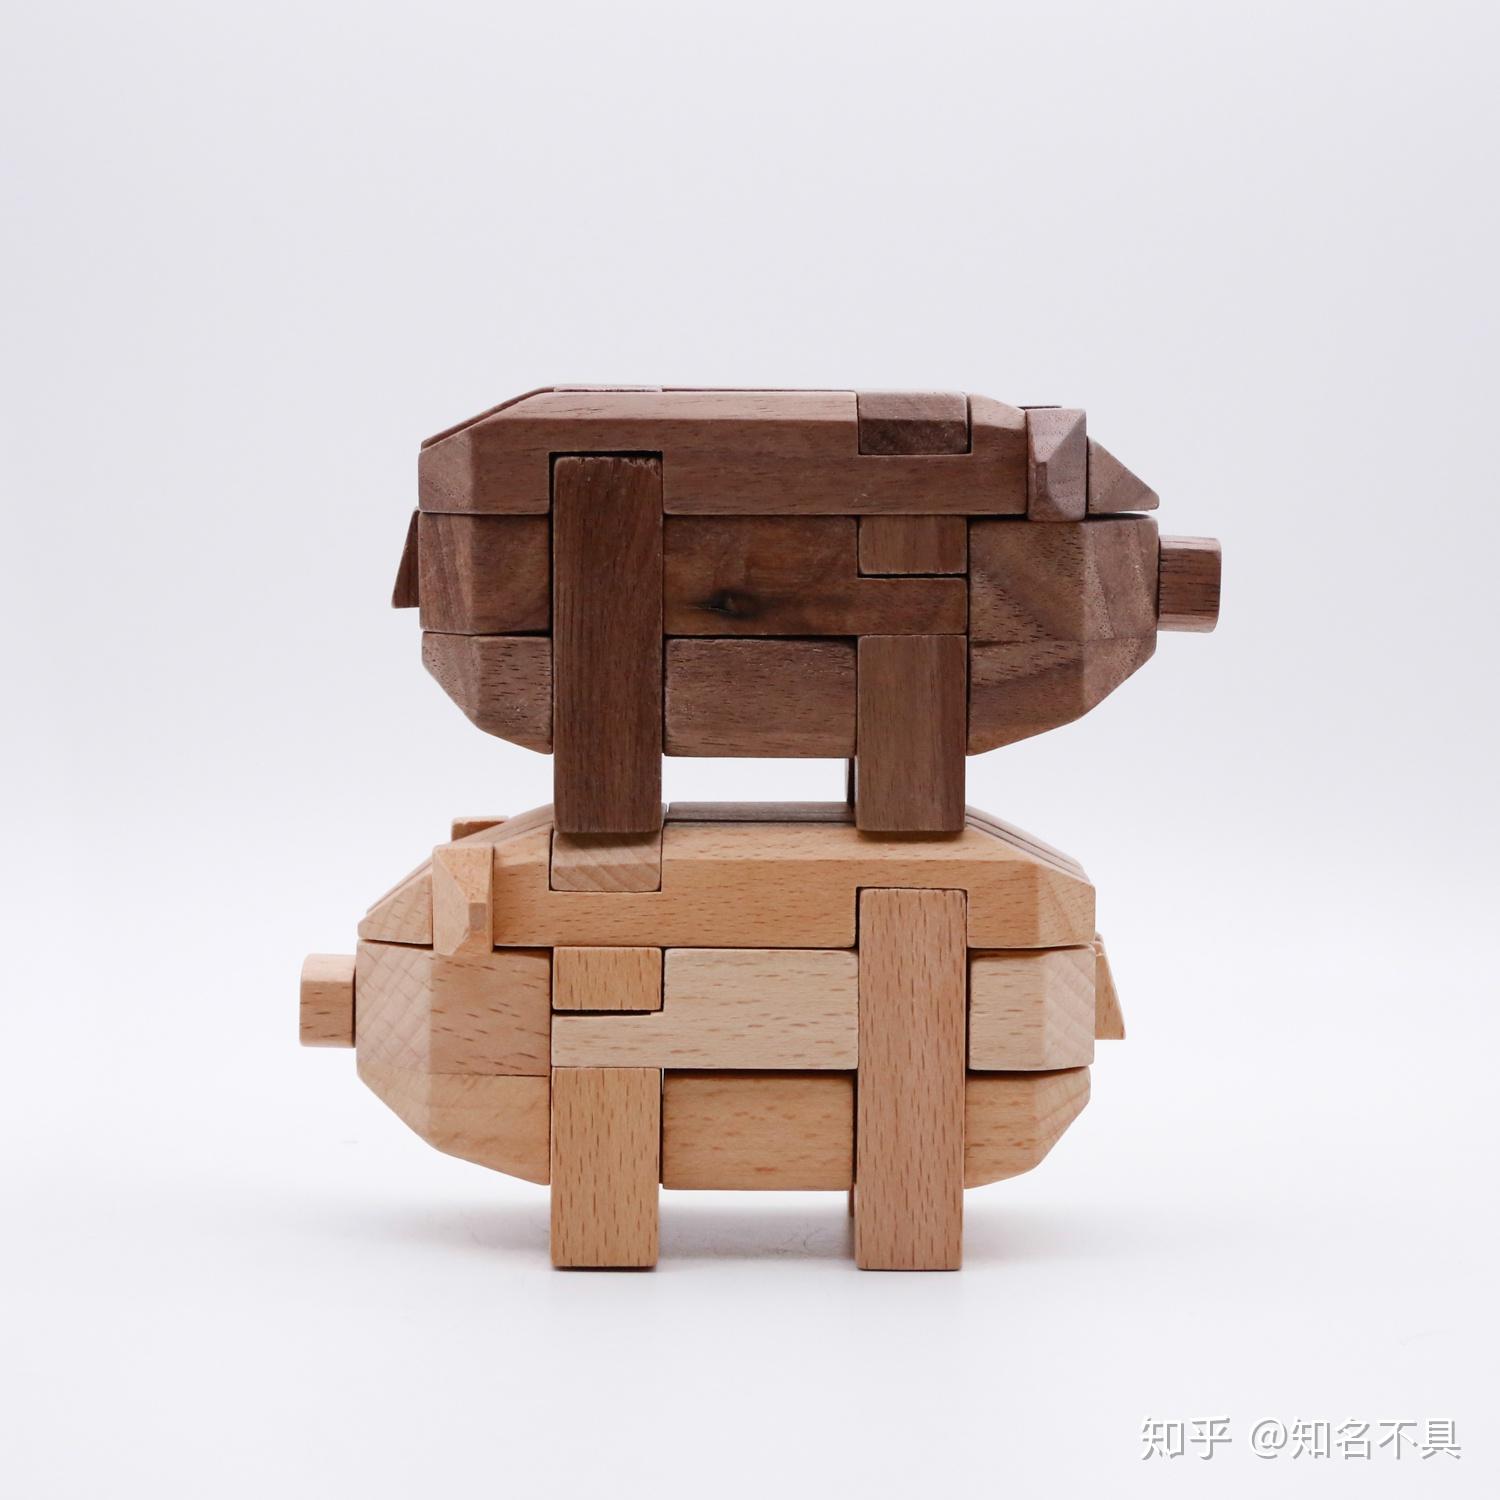 鲁班锁12生肖你想不到的中国传统木质玩具新玩法